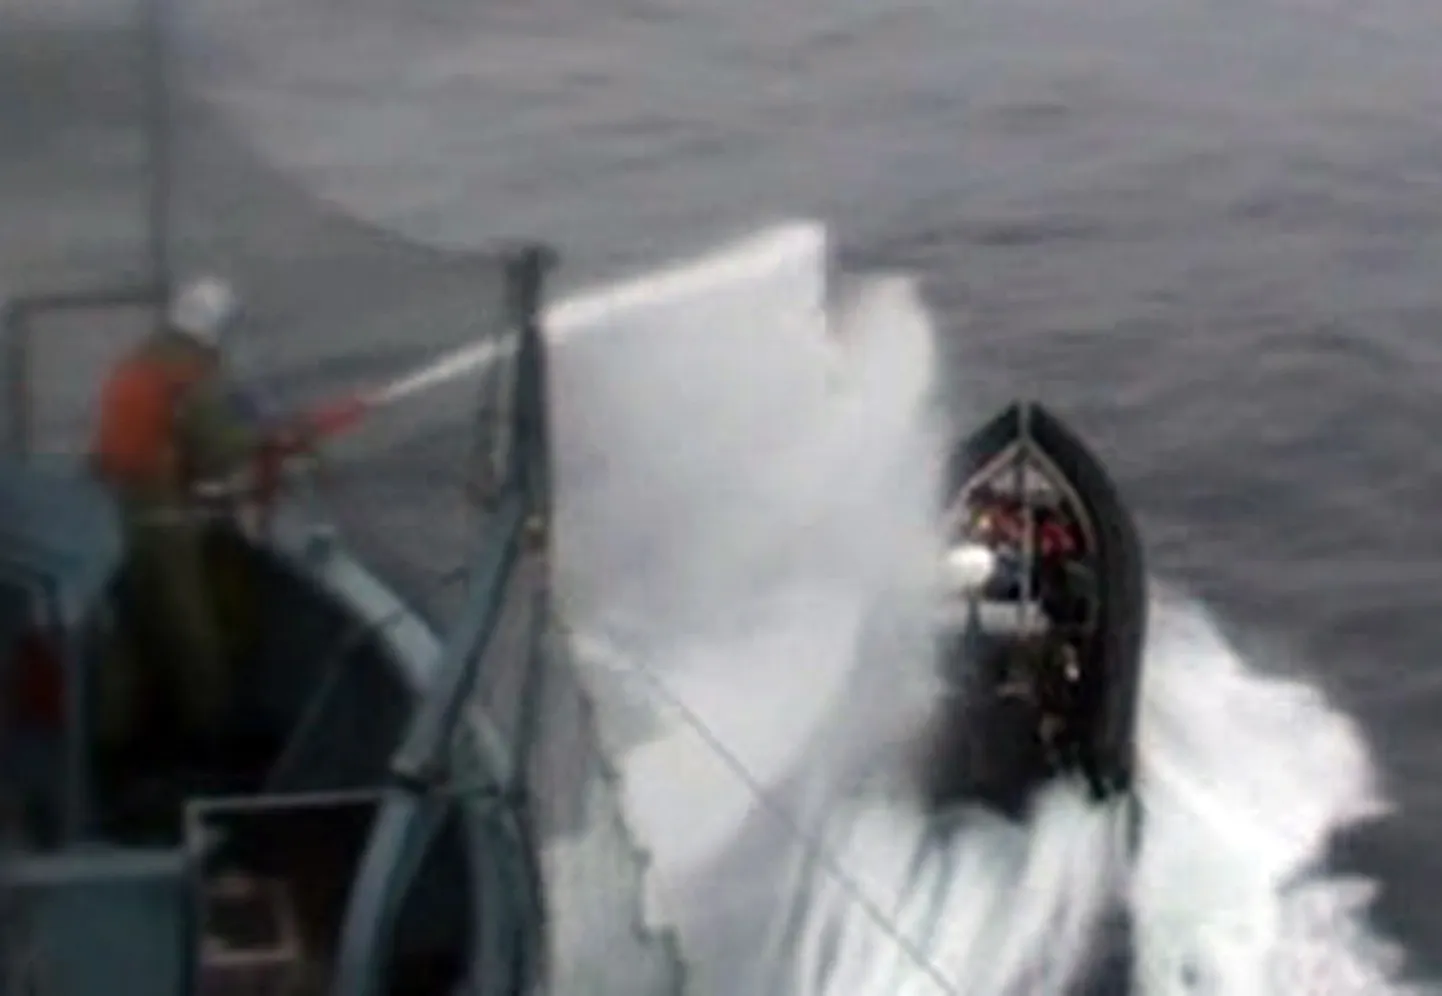 Jaapani vaalapüügilaeva meeskond tõrjumas eemale vaalapüügivastase rühmituse Sea Shepherd aktiviste.